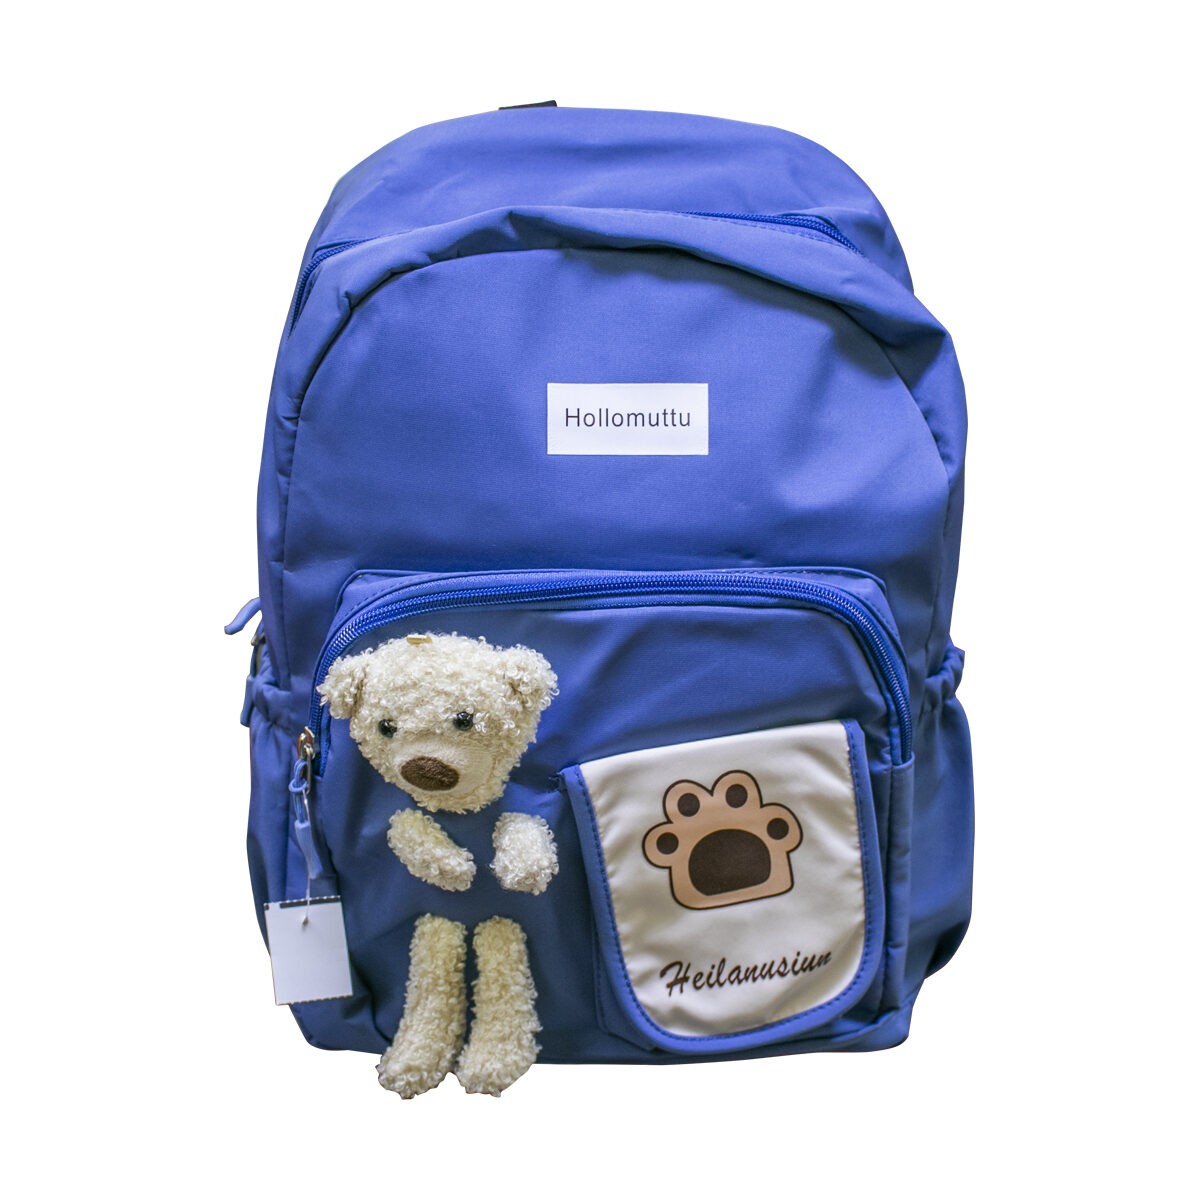 Hollomuttu Teddy Bear 1101 School Bag